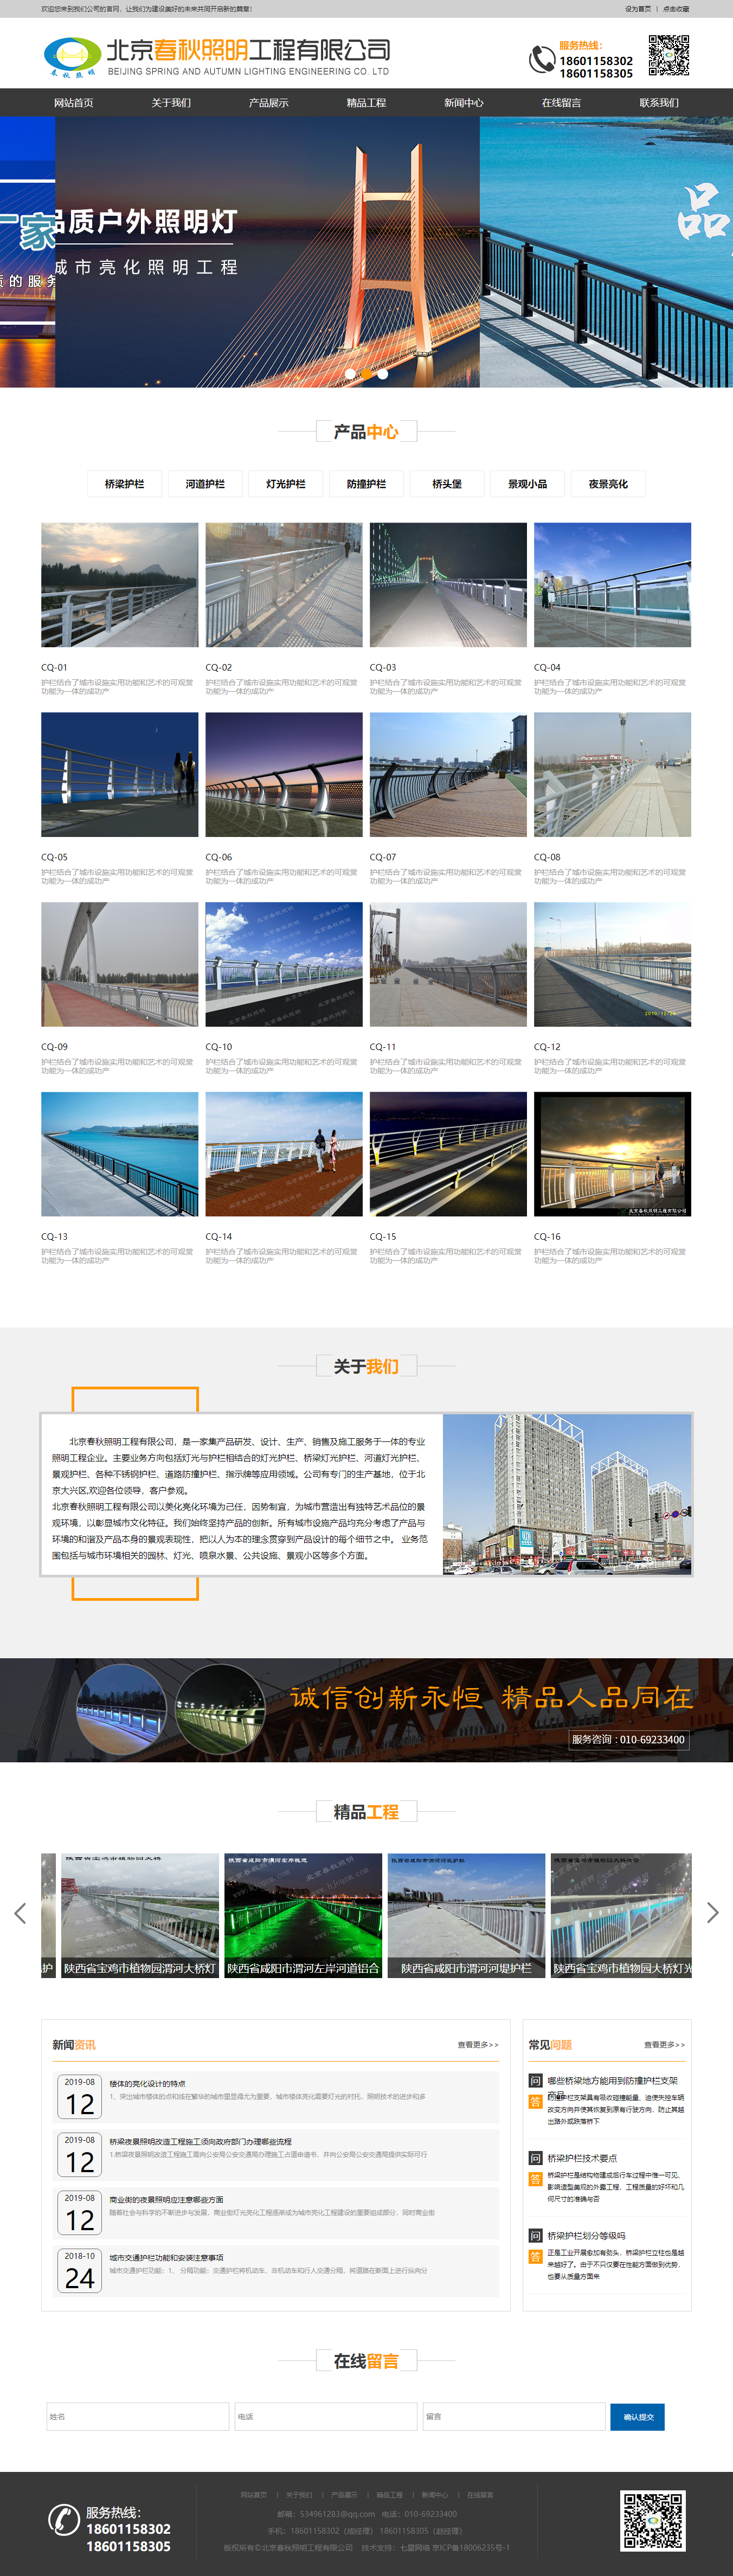 北京春秋照明工程有限公司网站案例